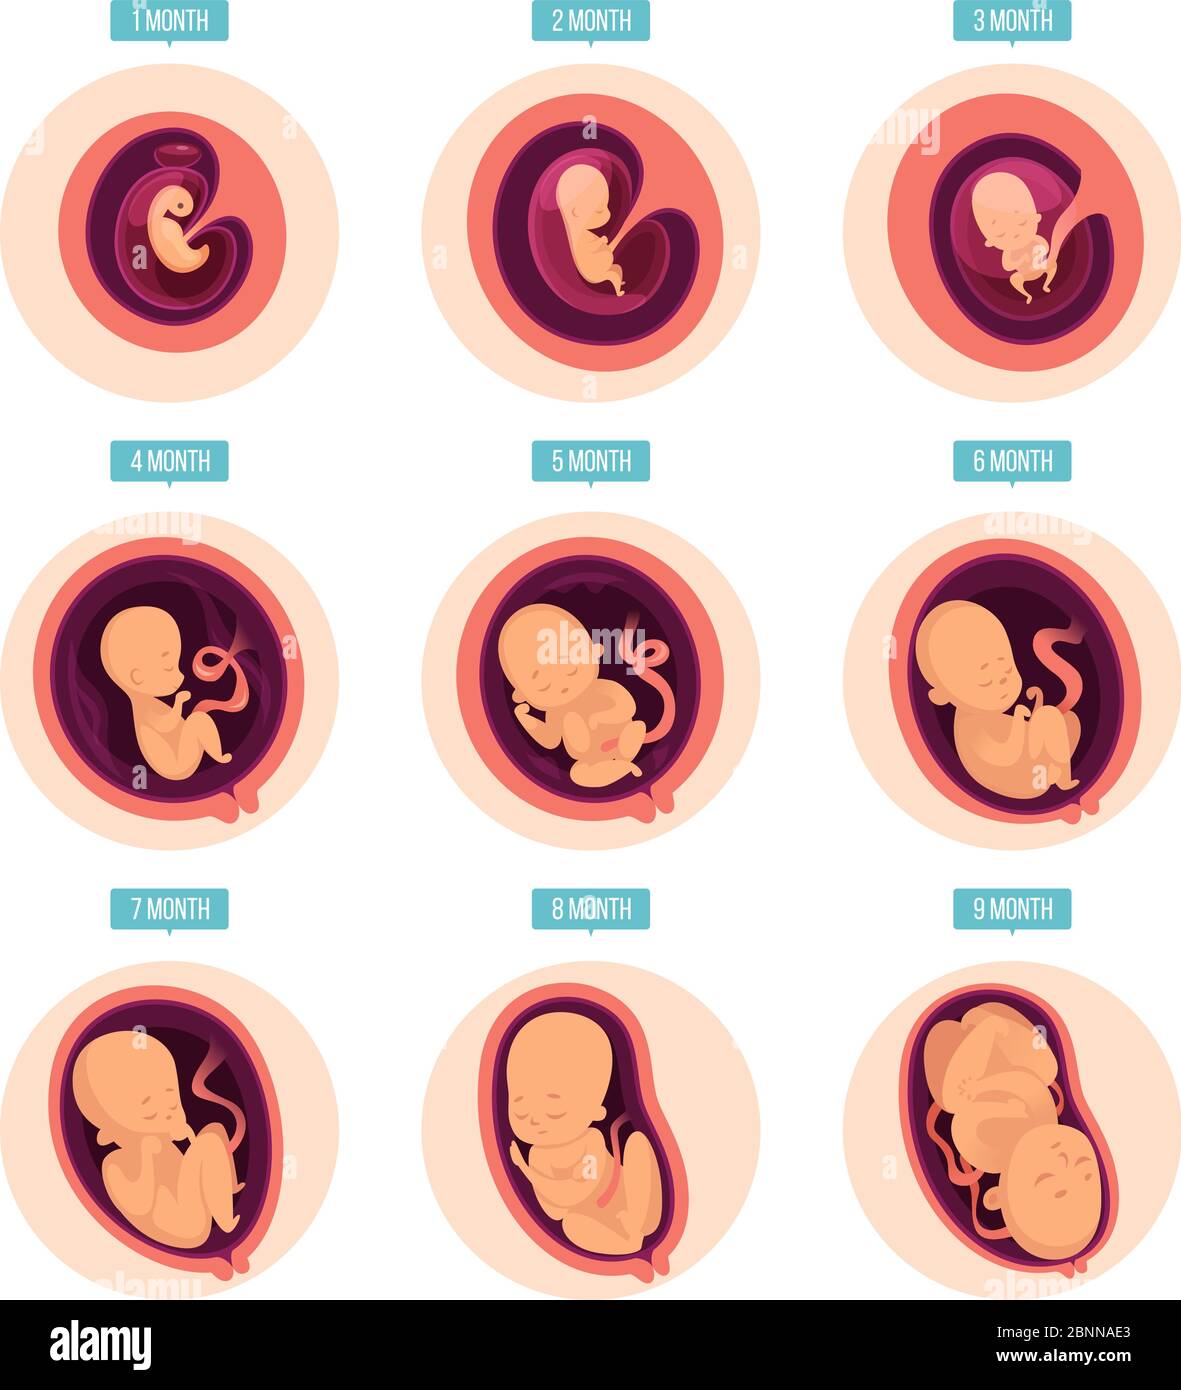 Desarrollo Infographic Embrionario Humano Infographic Embrionario